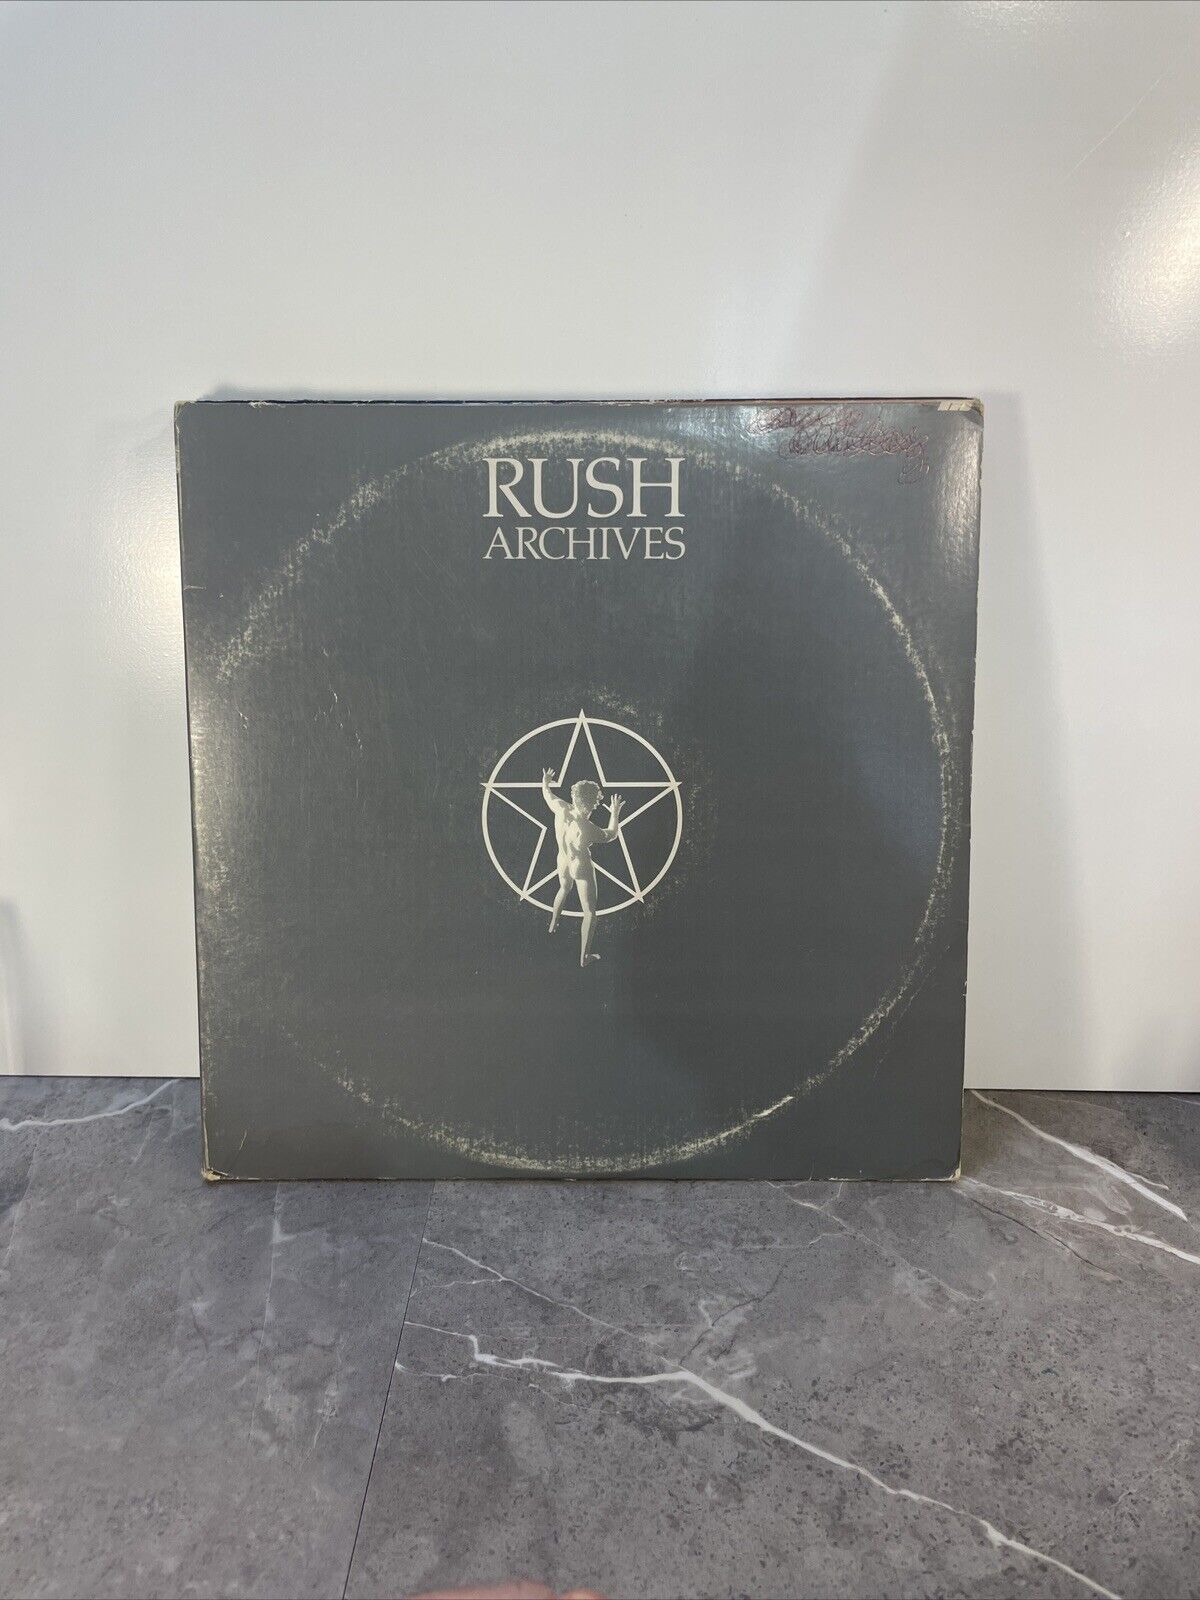 Rush Archives Vinyl 3 LP Set Records Gatefold Srm-3-9200 Mercury Records 